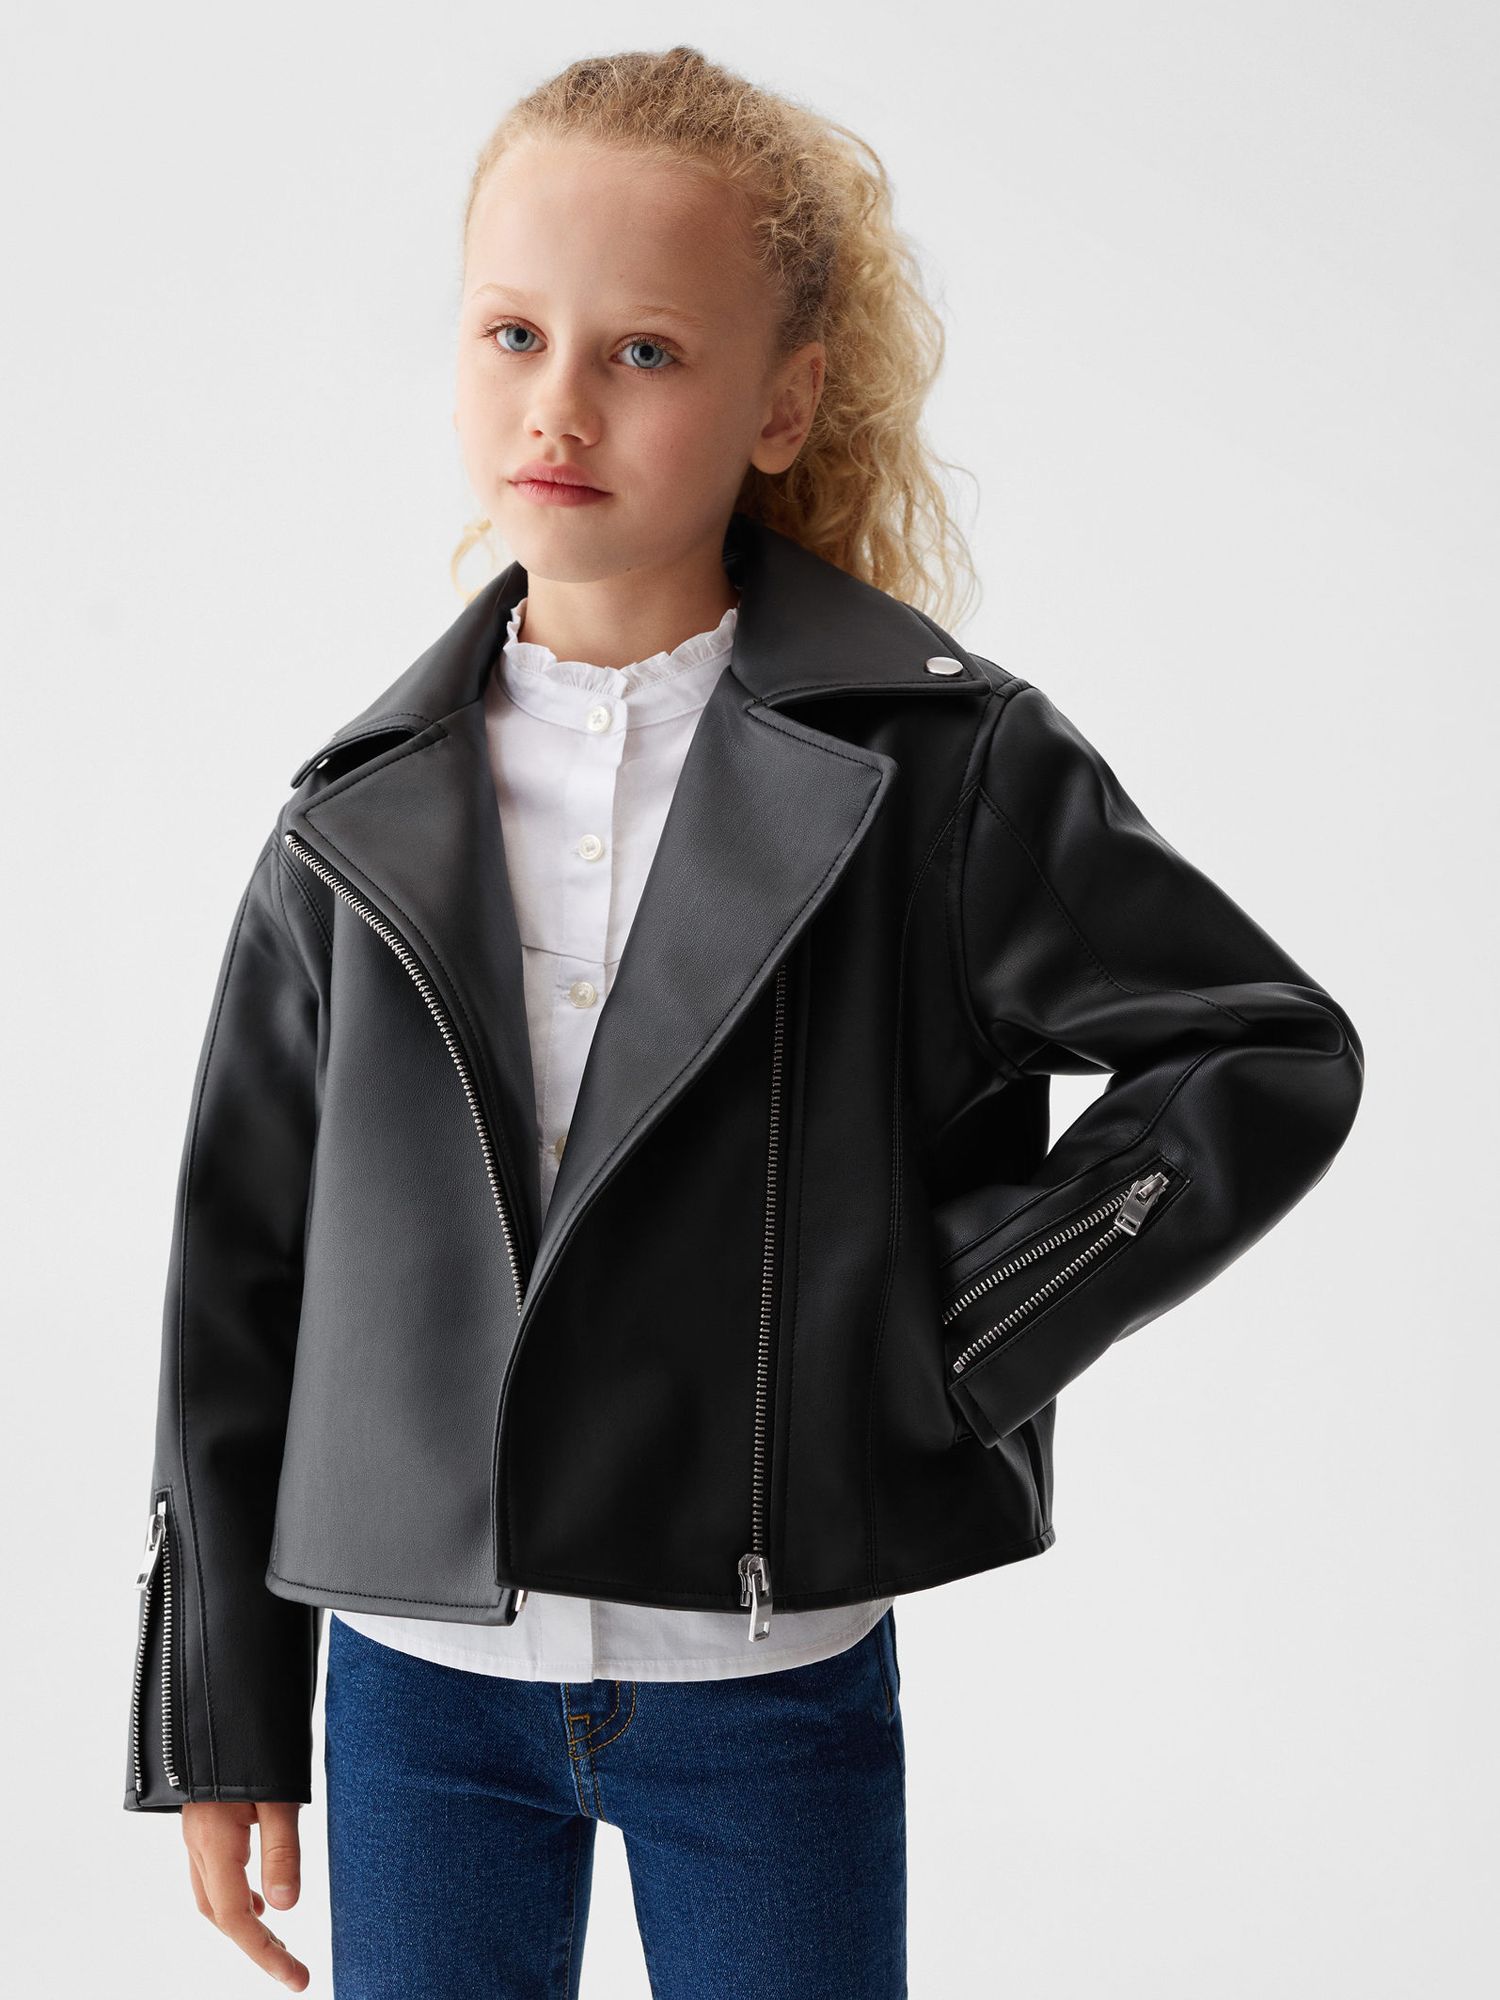 Mango Kids' Galia Faux Leather Jacket, Black at John Lewis & Partners